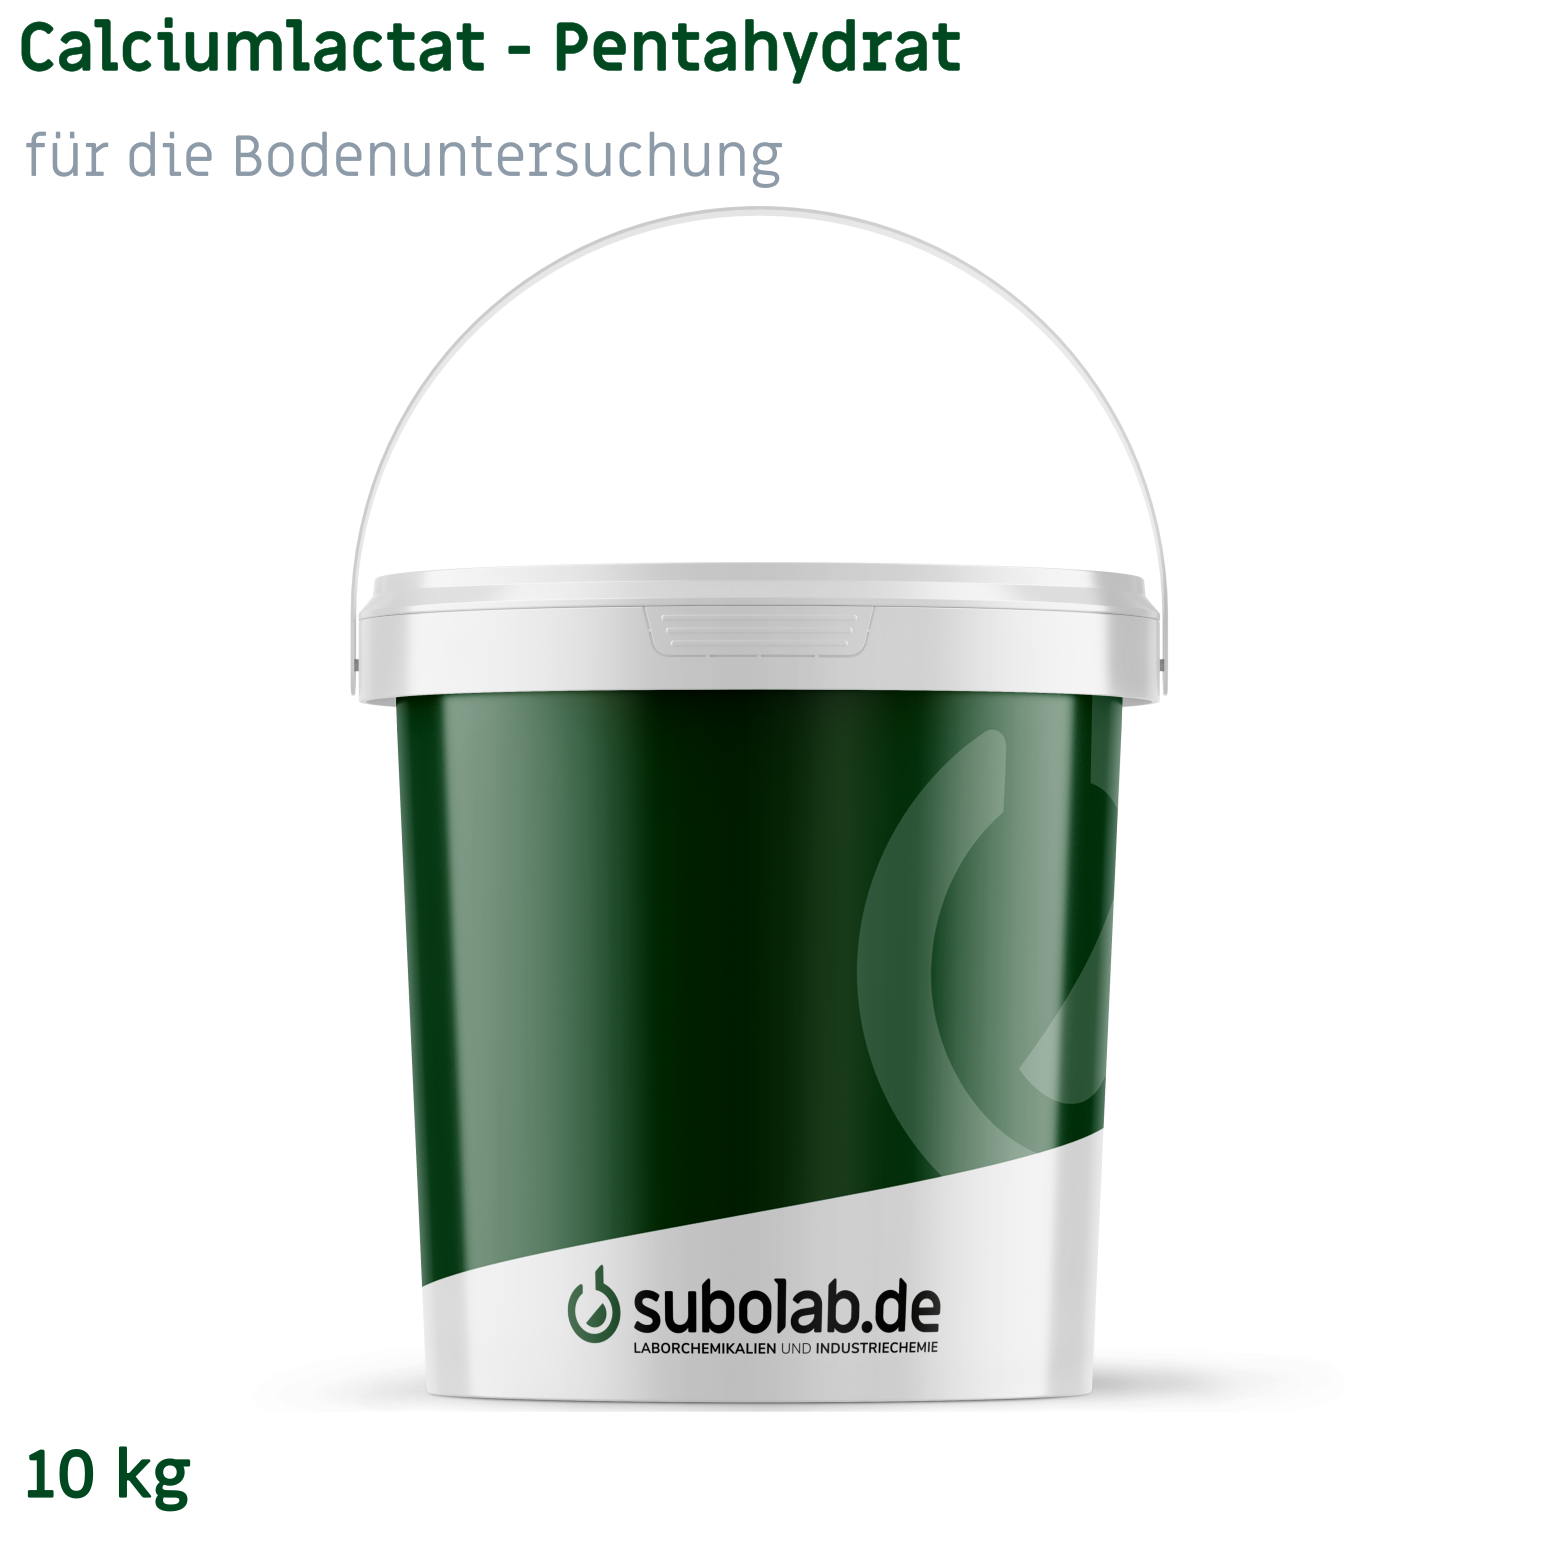 Bild von Calciumlactat - Pentahydrat für die Bodenuntersuchung (10 kg)